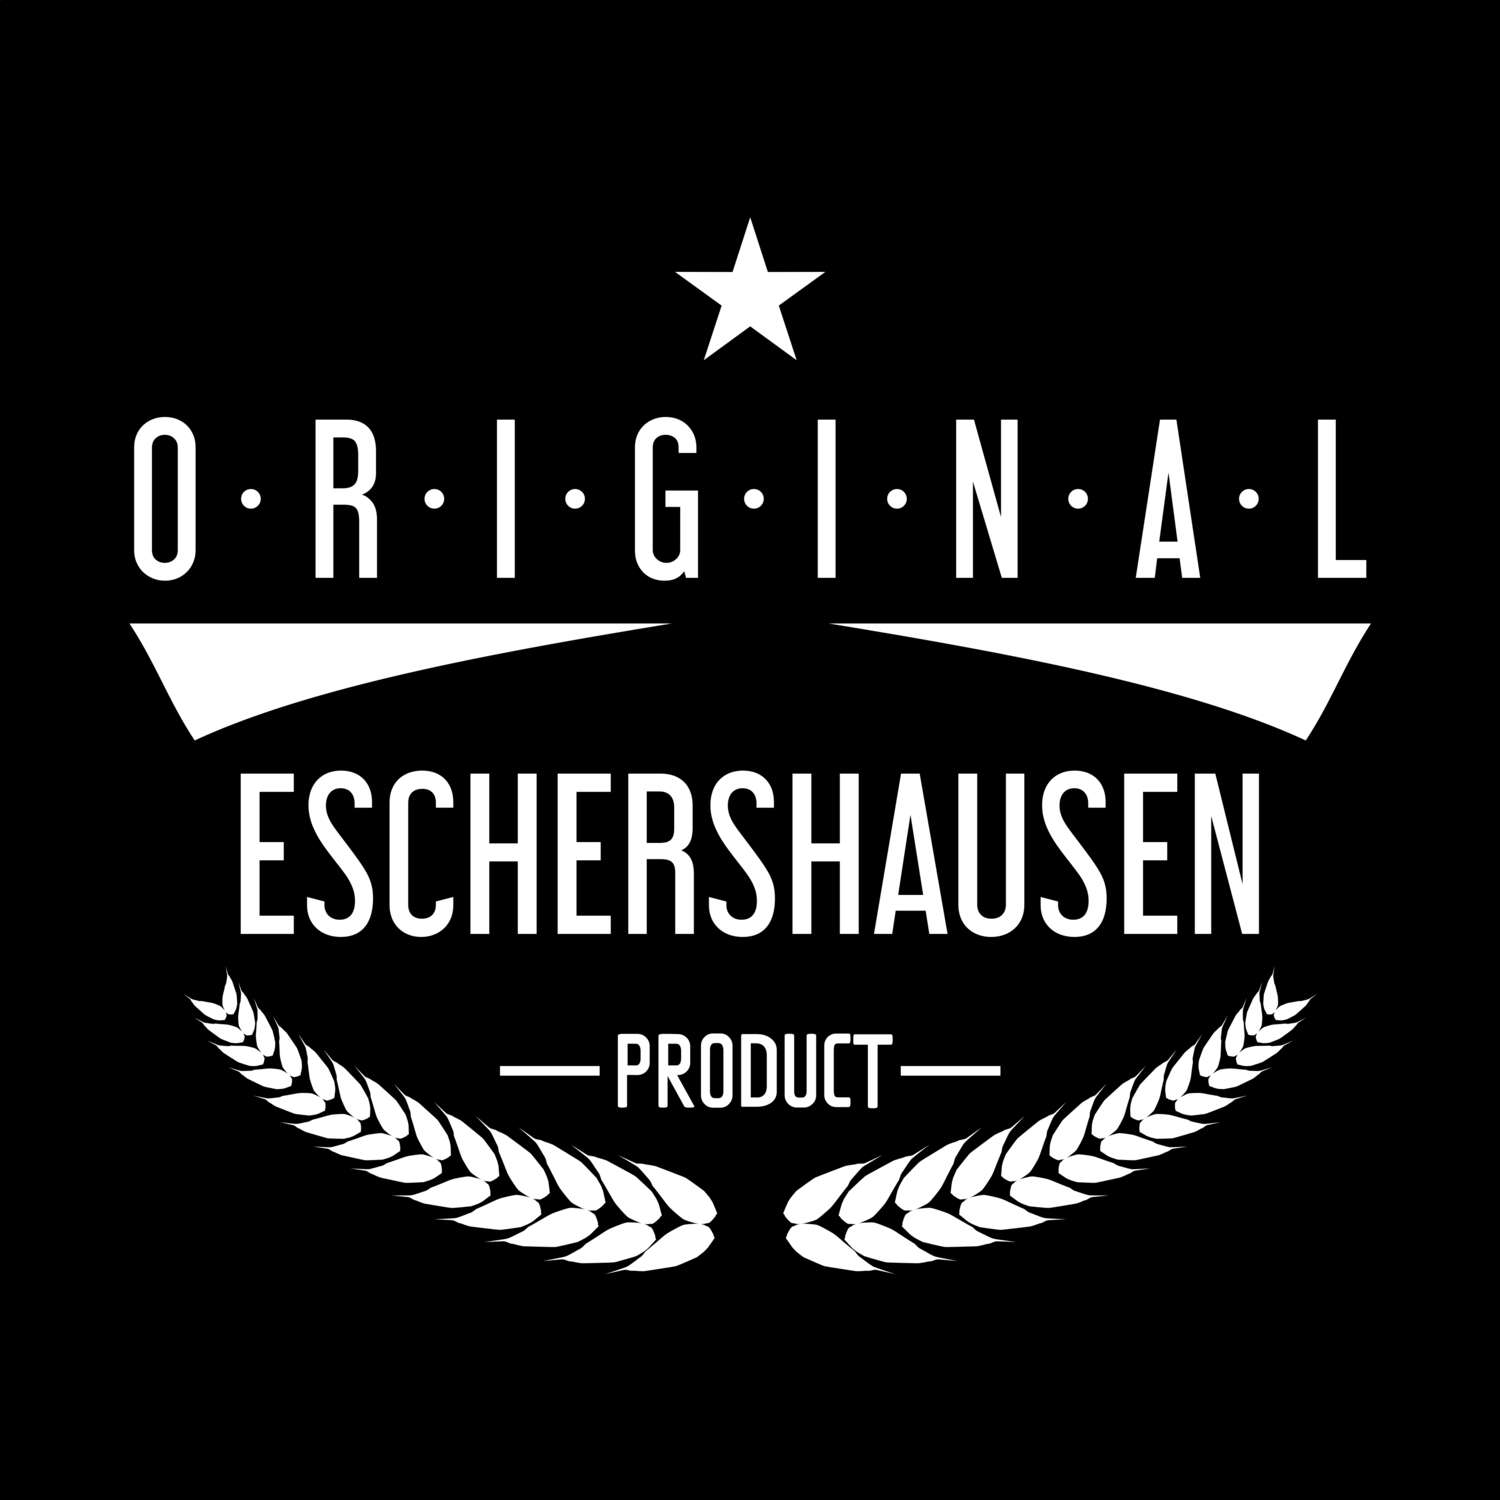 Eschershausen T-Shirt »Original Product«